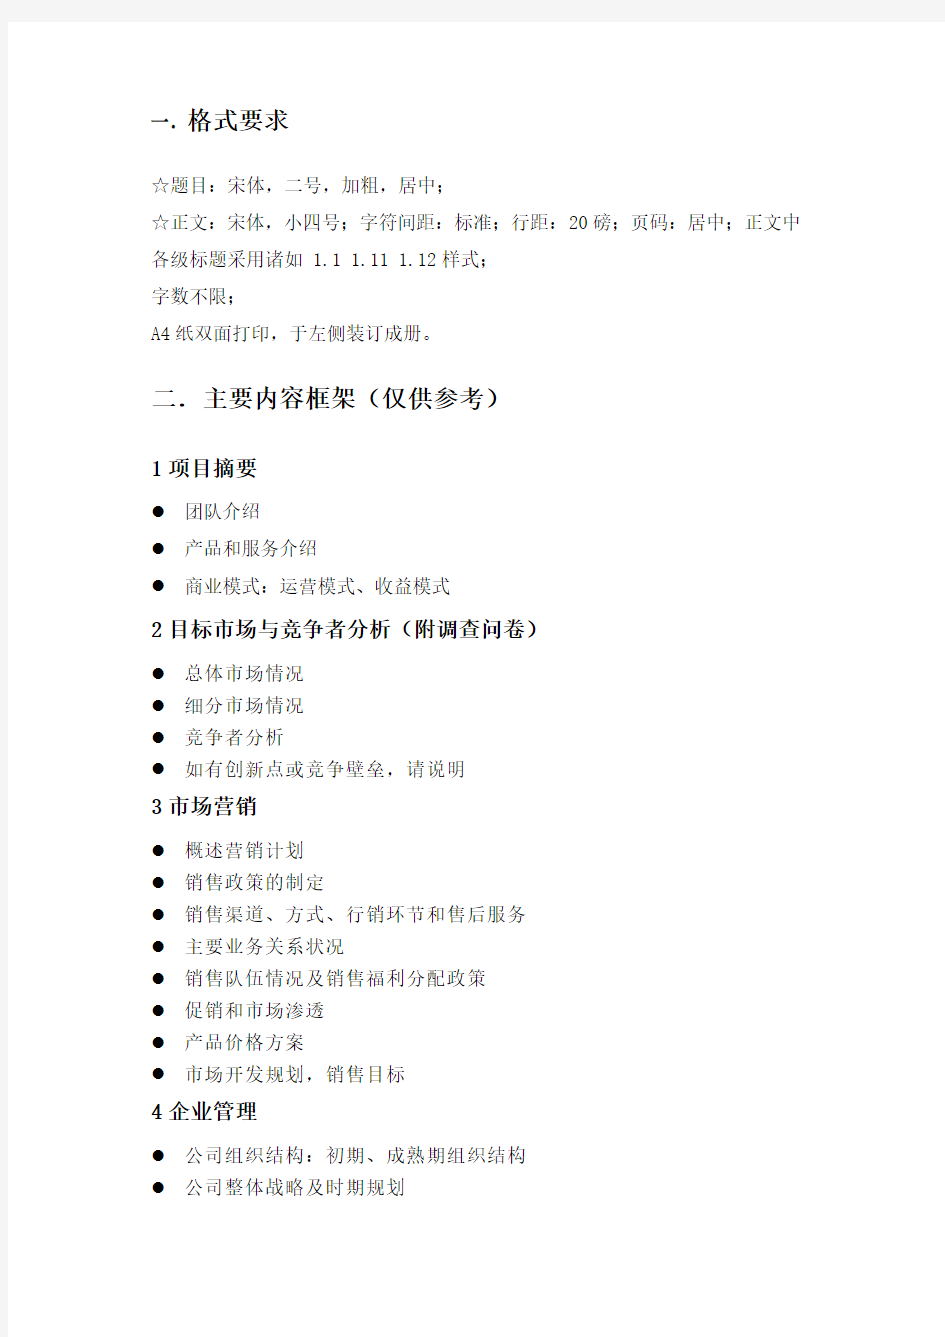 中国人民大学创业训练项目创业计划书(初稿,用于项目申请)